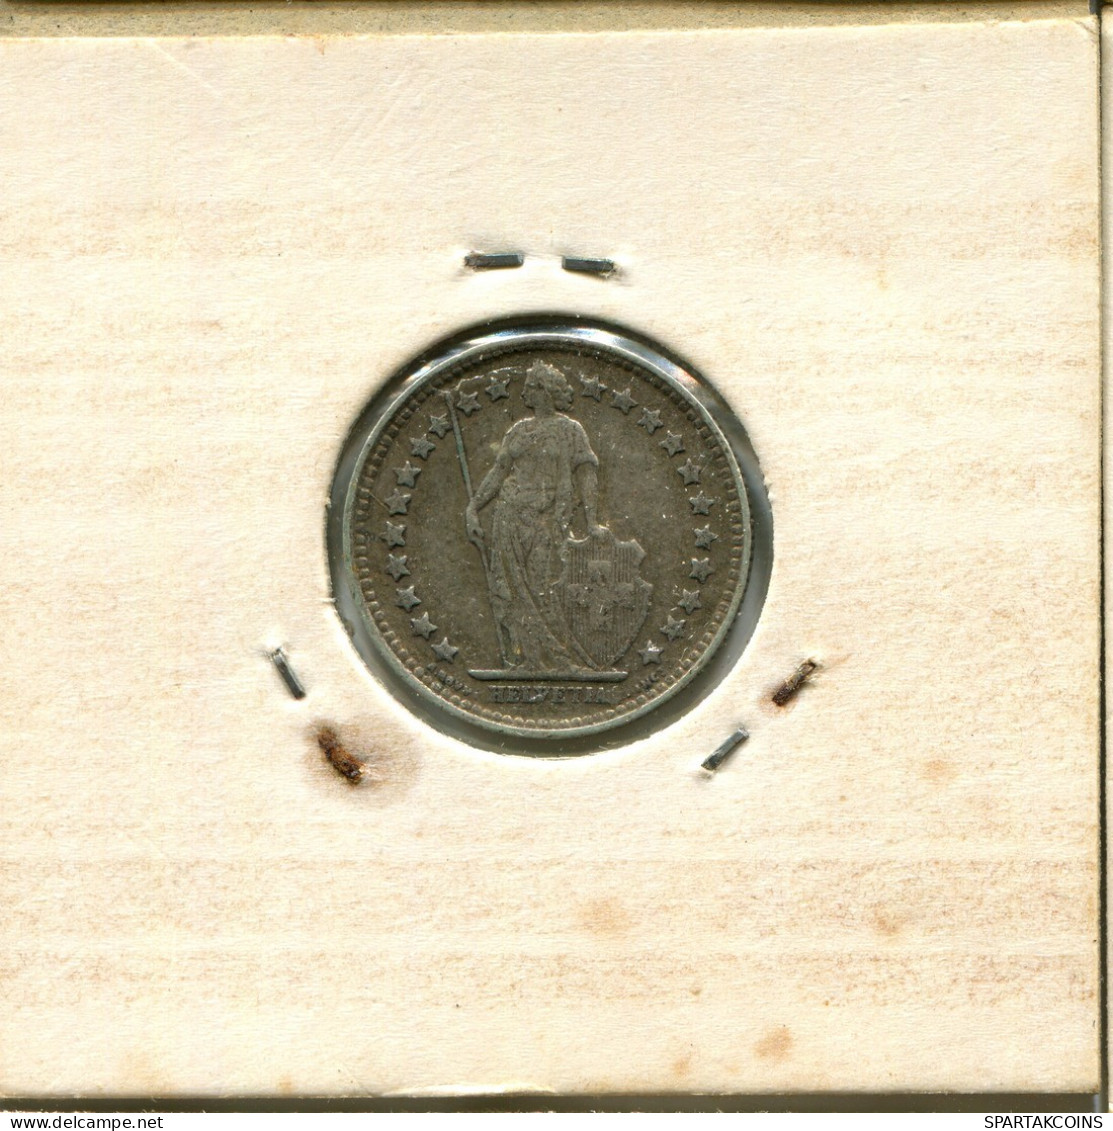 1/2 FRANC 1920 B SUIZA SWITZERLAND Moneda PLATA #AY011.3.E.A - Otros & Sin Clasificación